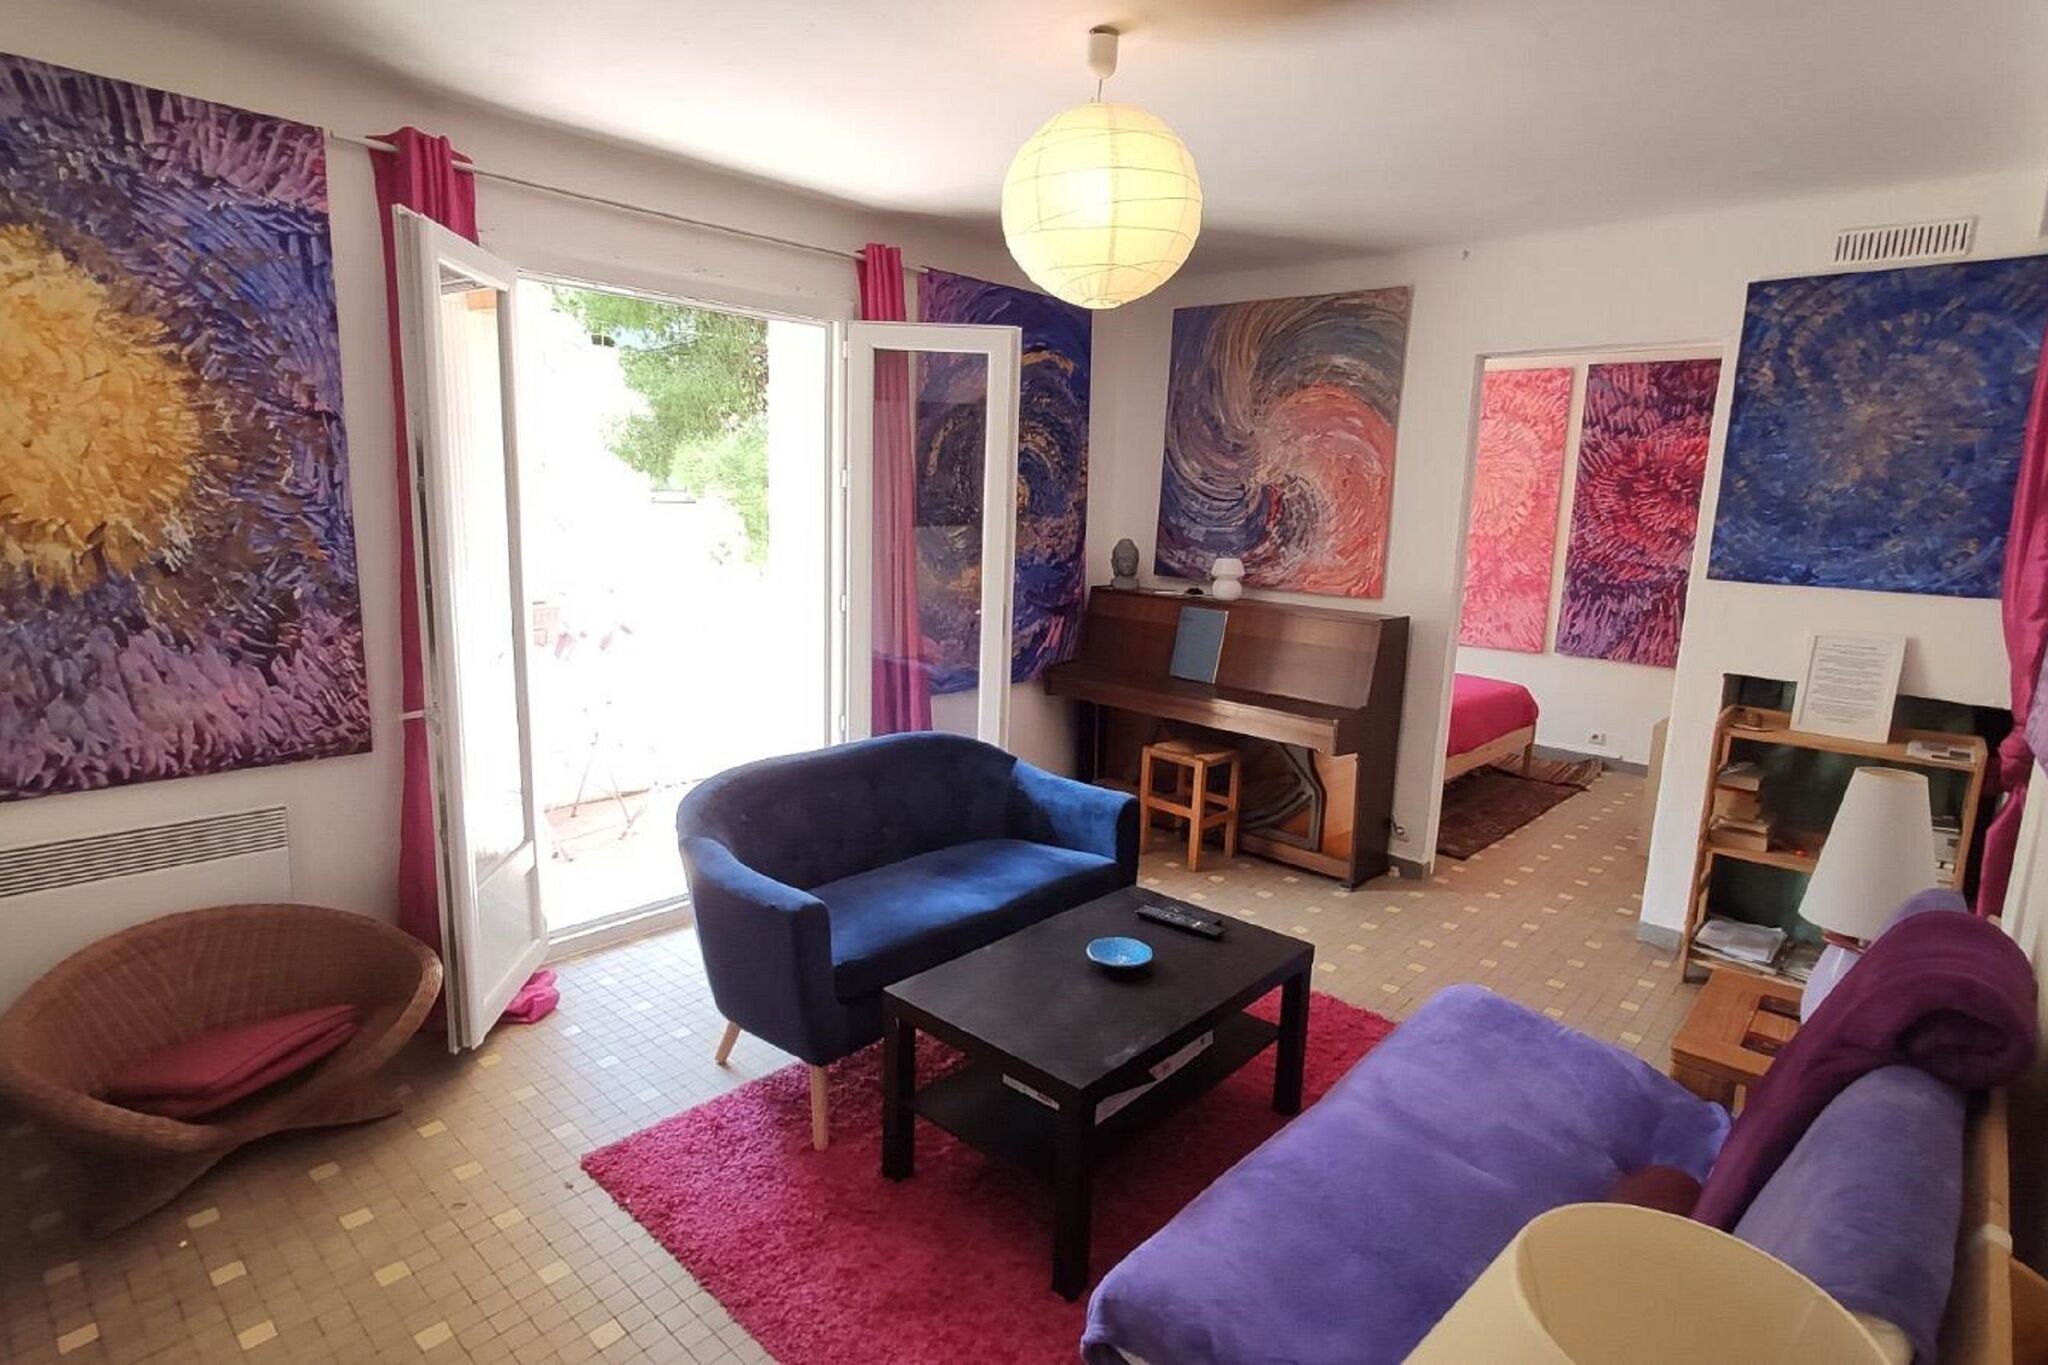 Fijn appartement in Montpellier vlak bij het centrum